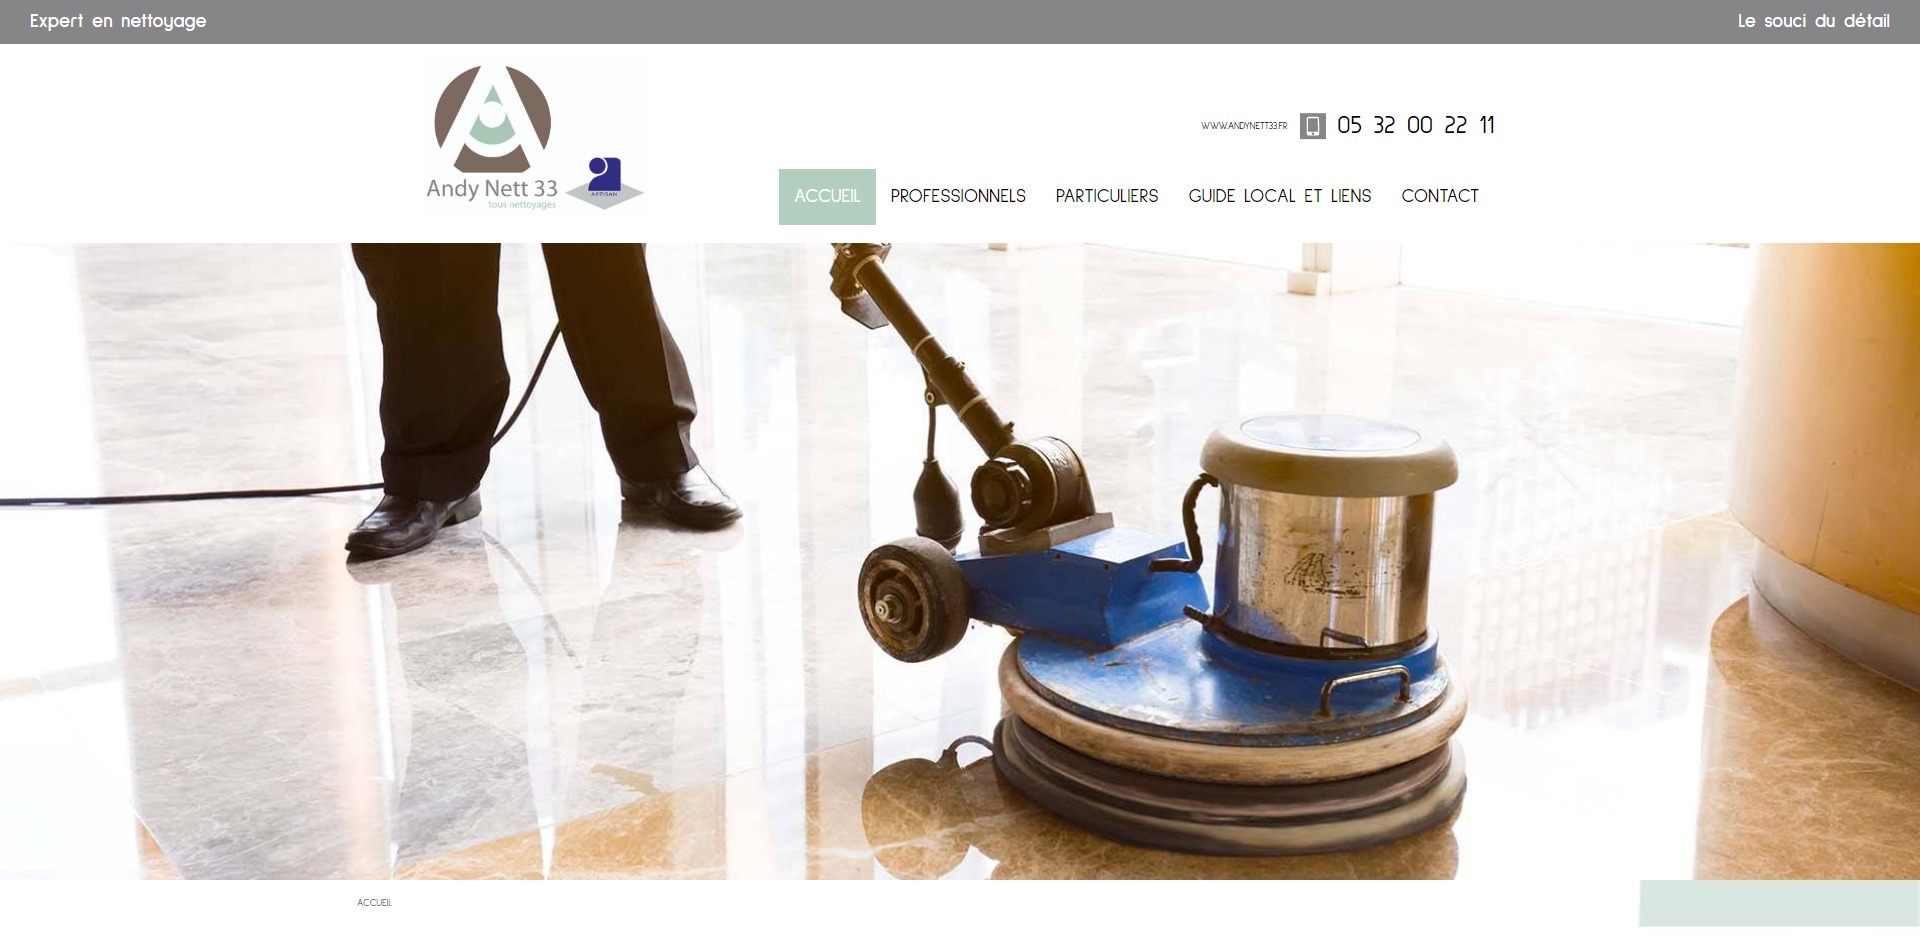 ANDY NETT 33 entreprise de nettoyage et d'entretien pour les professionnels en Gironde